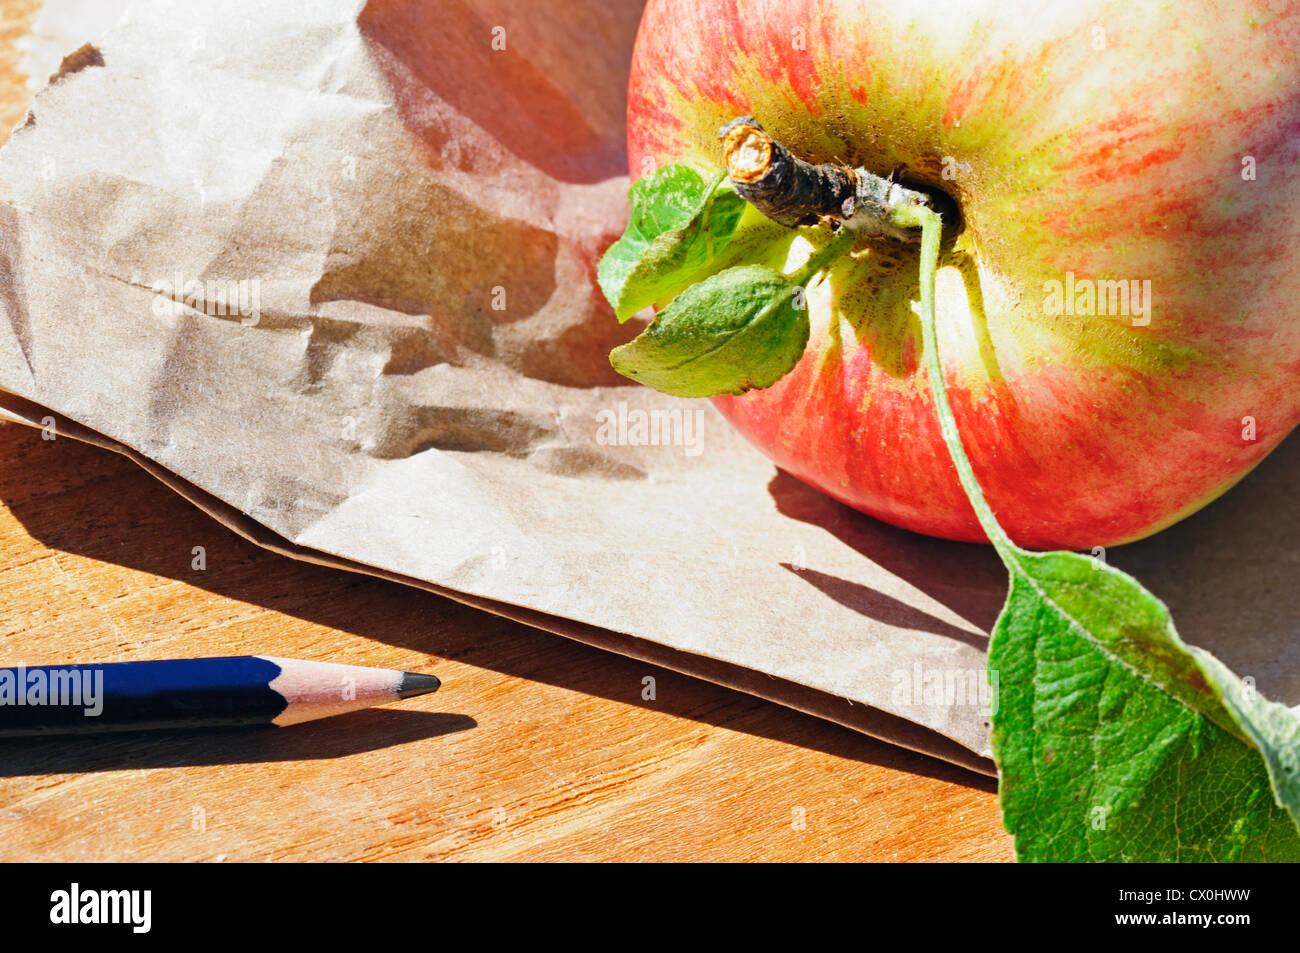 Un sac à lunch en papier brun, une pomme fraîchement cueillie et un crayon sont tous des objets dont bénéficient les étudiants qui vont à l'école. Banque D'Images